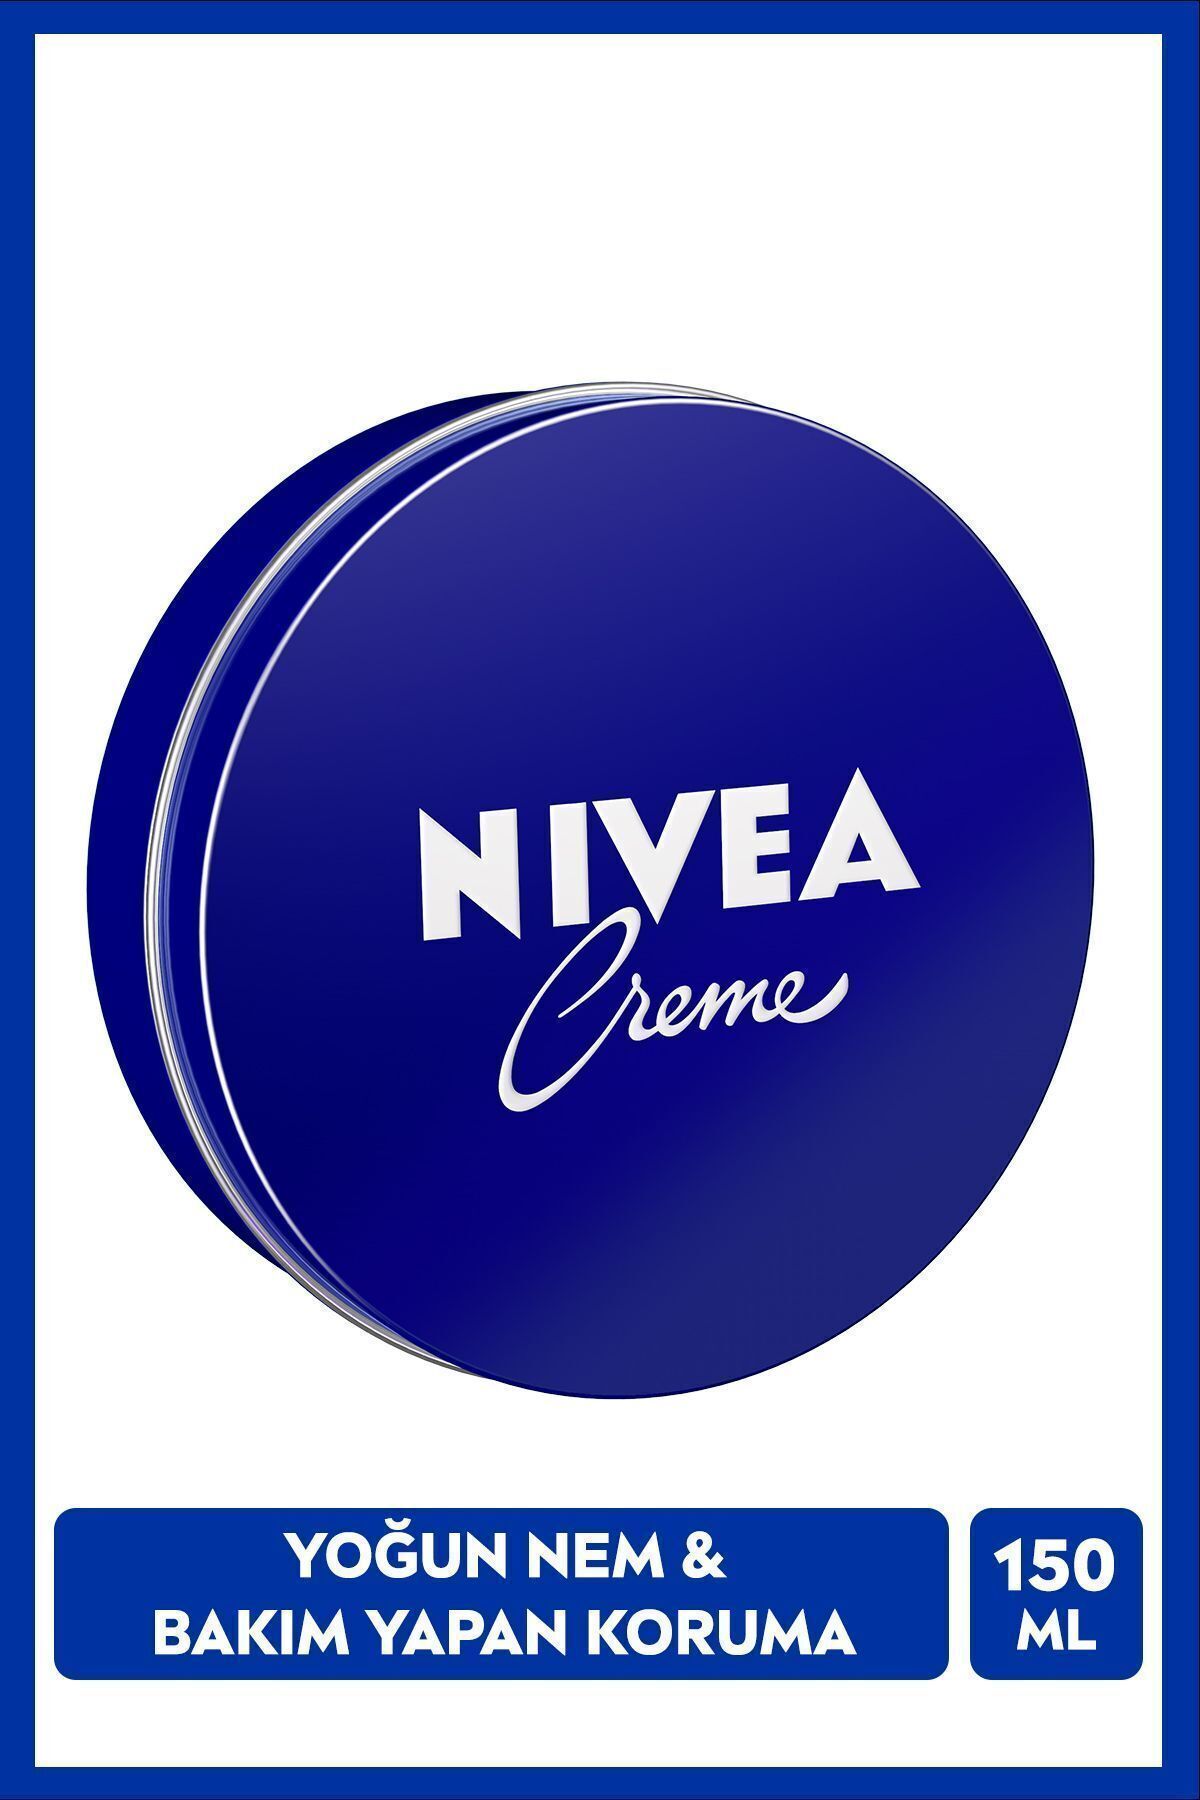 NIVEA Creme 30ml, Bakım Yapan Koruma, Uzun Süreli Yoğun Nemlendirici, El Yüz Ve Vücut, Yumuşak Cilt Hissi